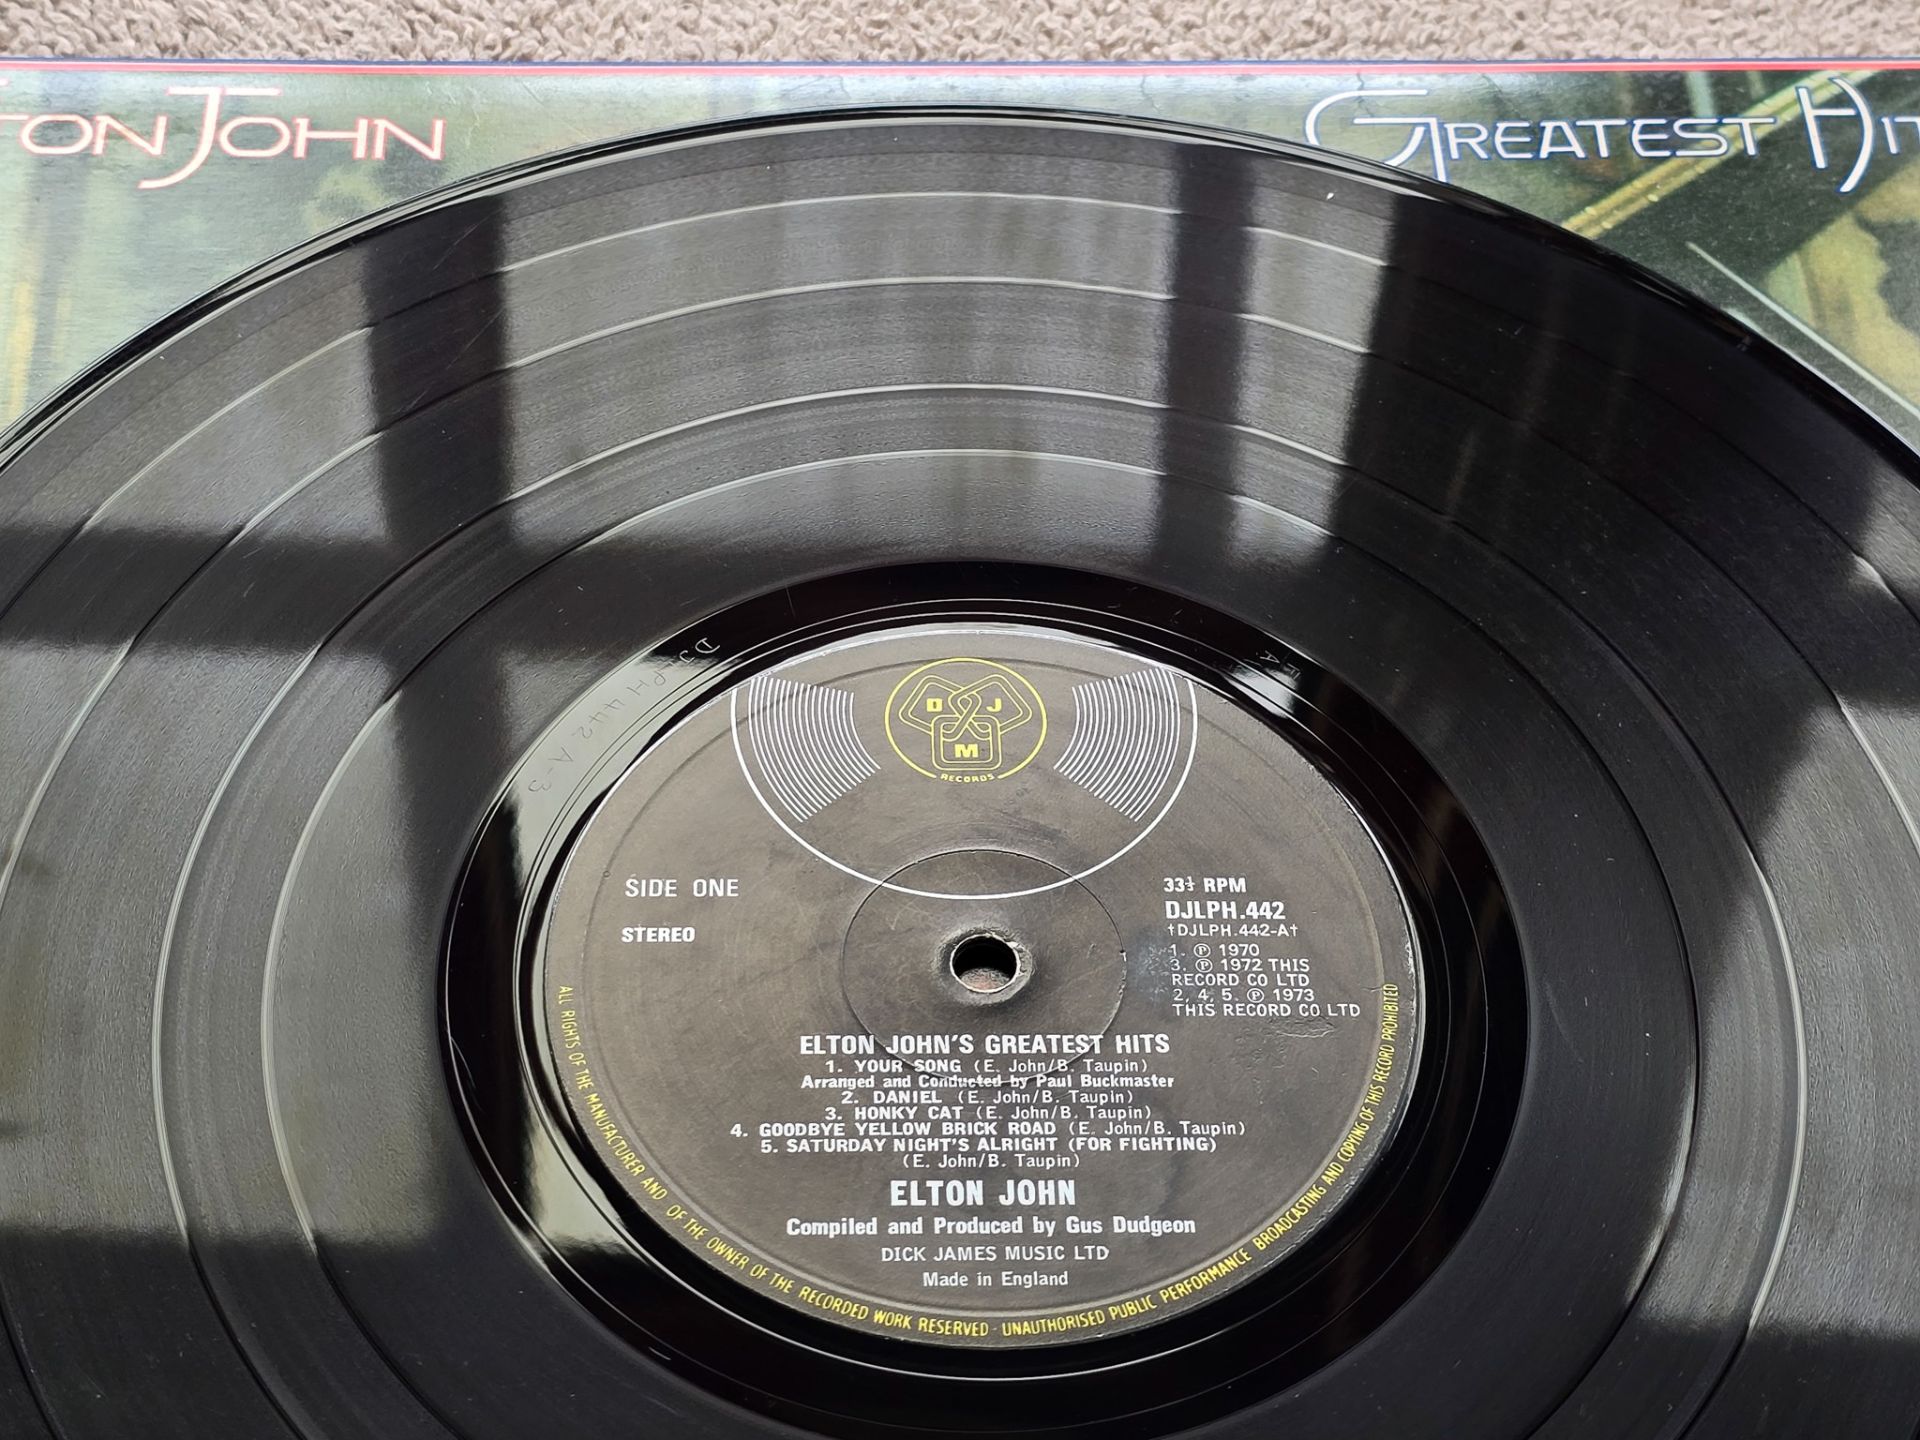 Elton John – Greatest Hits Red Splatter UK 1st issue vinyl LP - Image 8 of 9